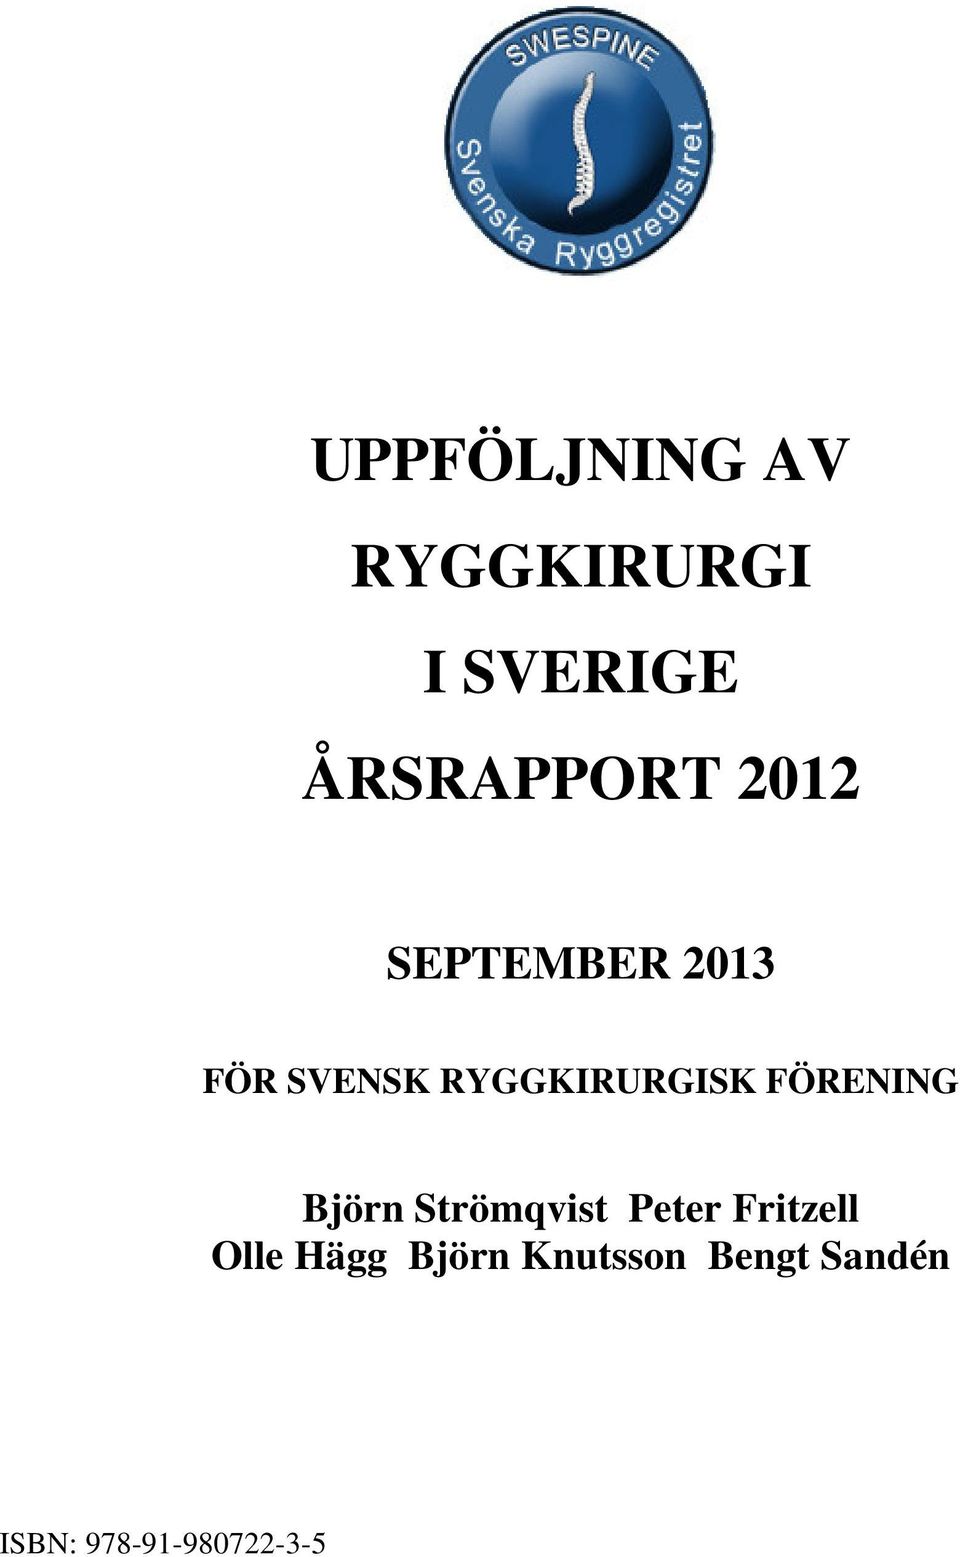 FÖRENING Björn Strömqvist Peter Fritzell Olle